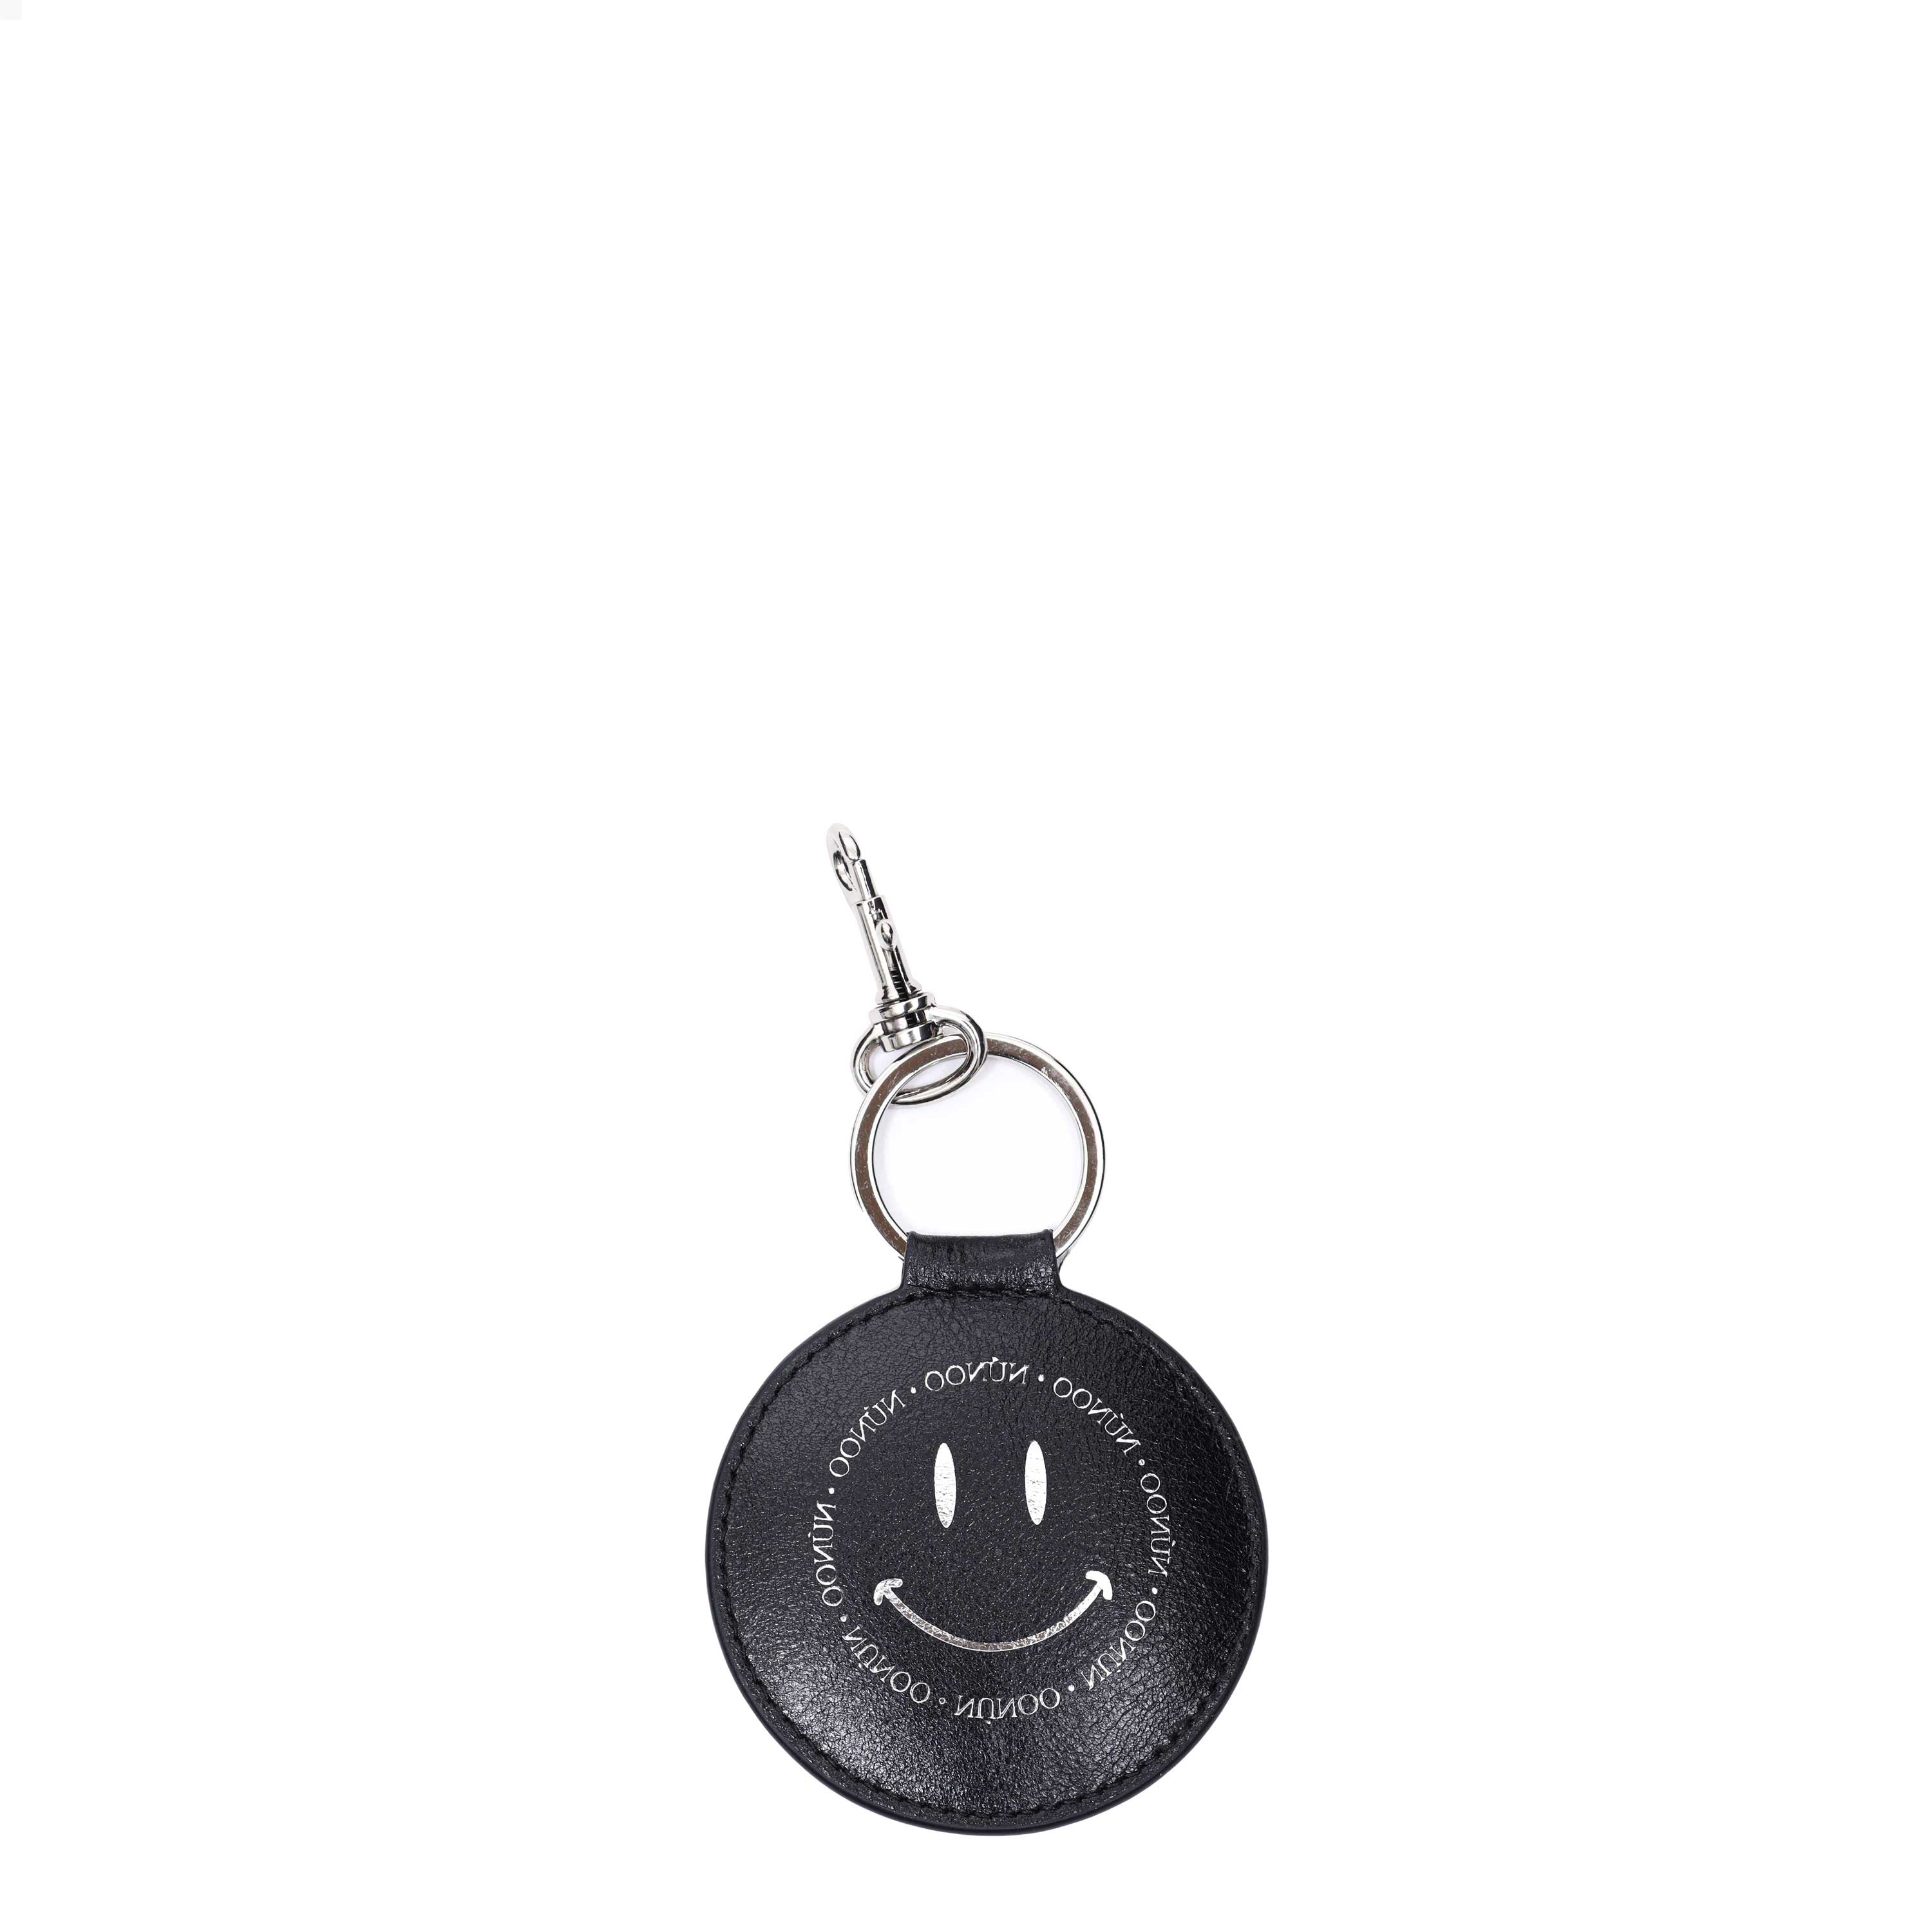 Smiley key ring city - black